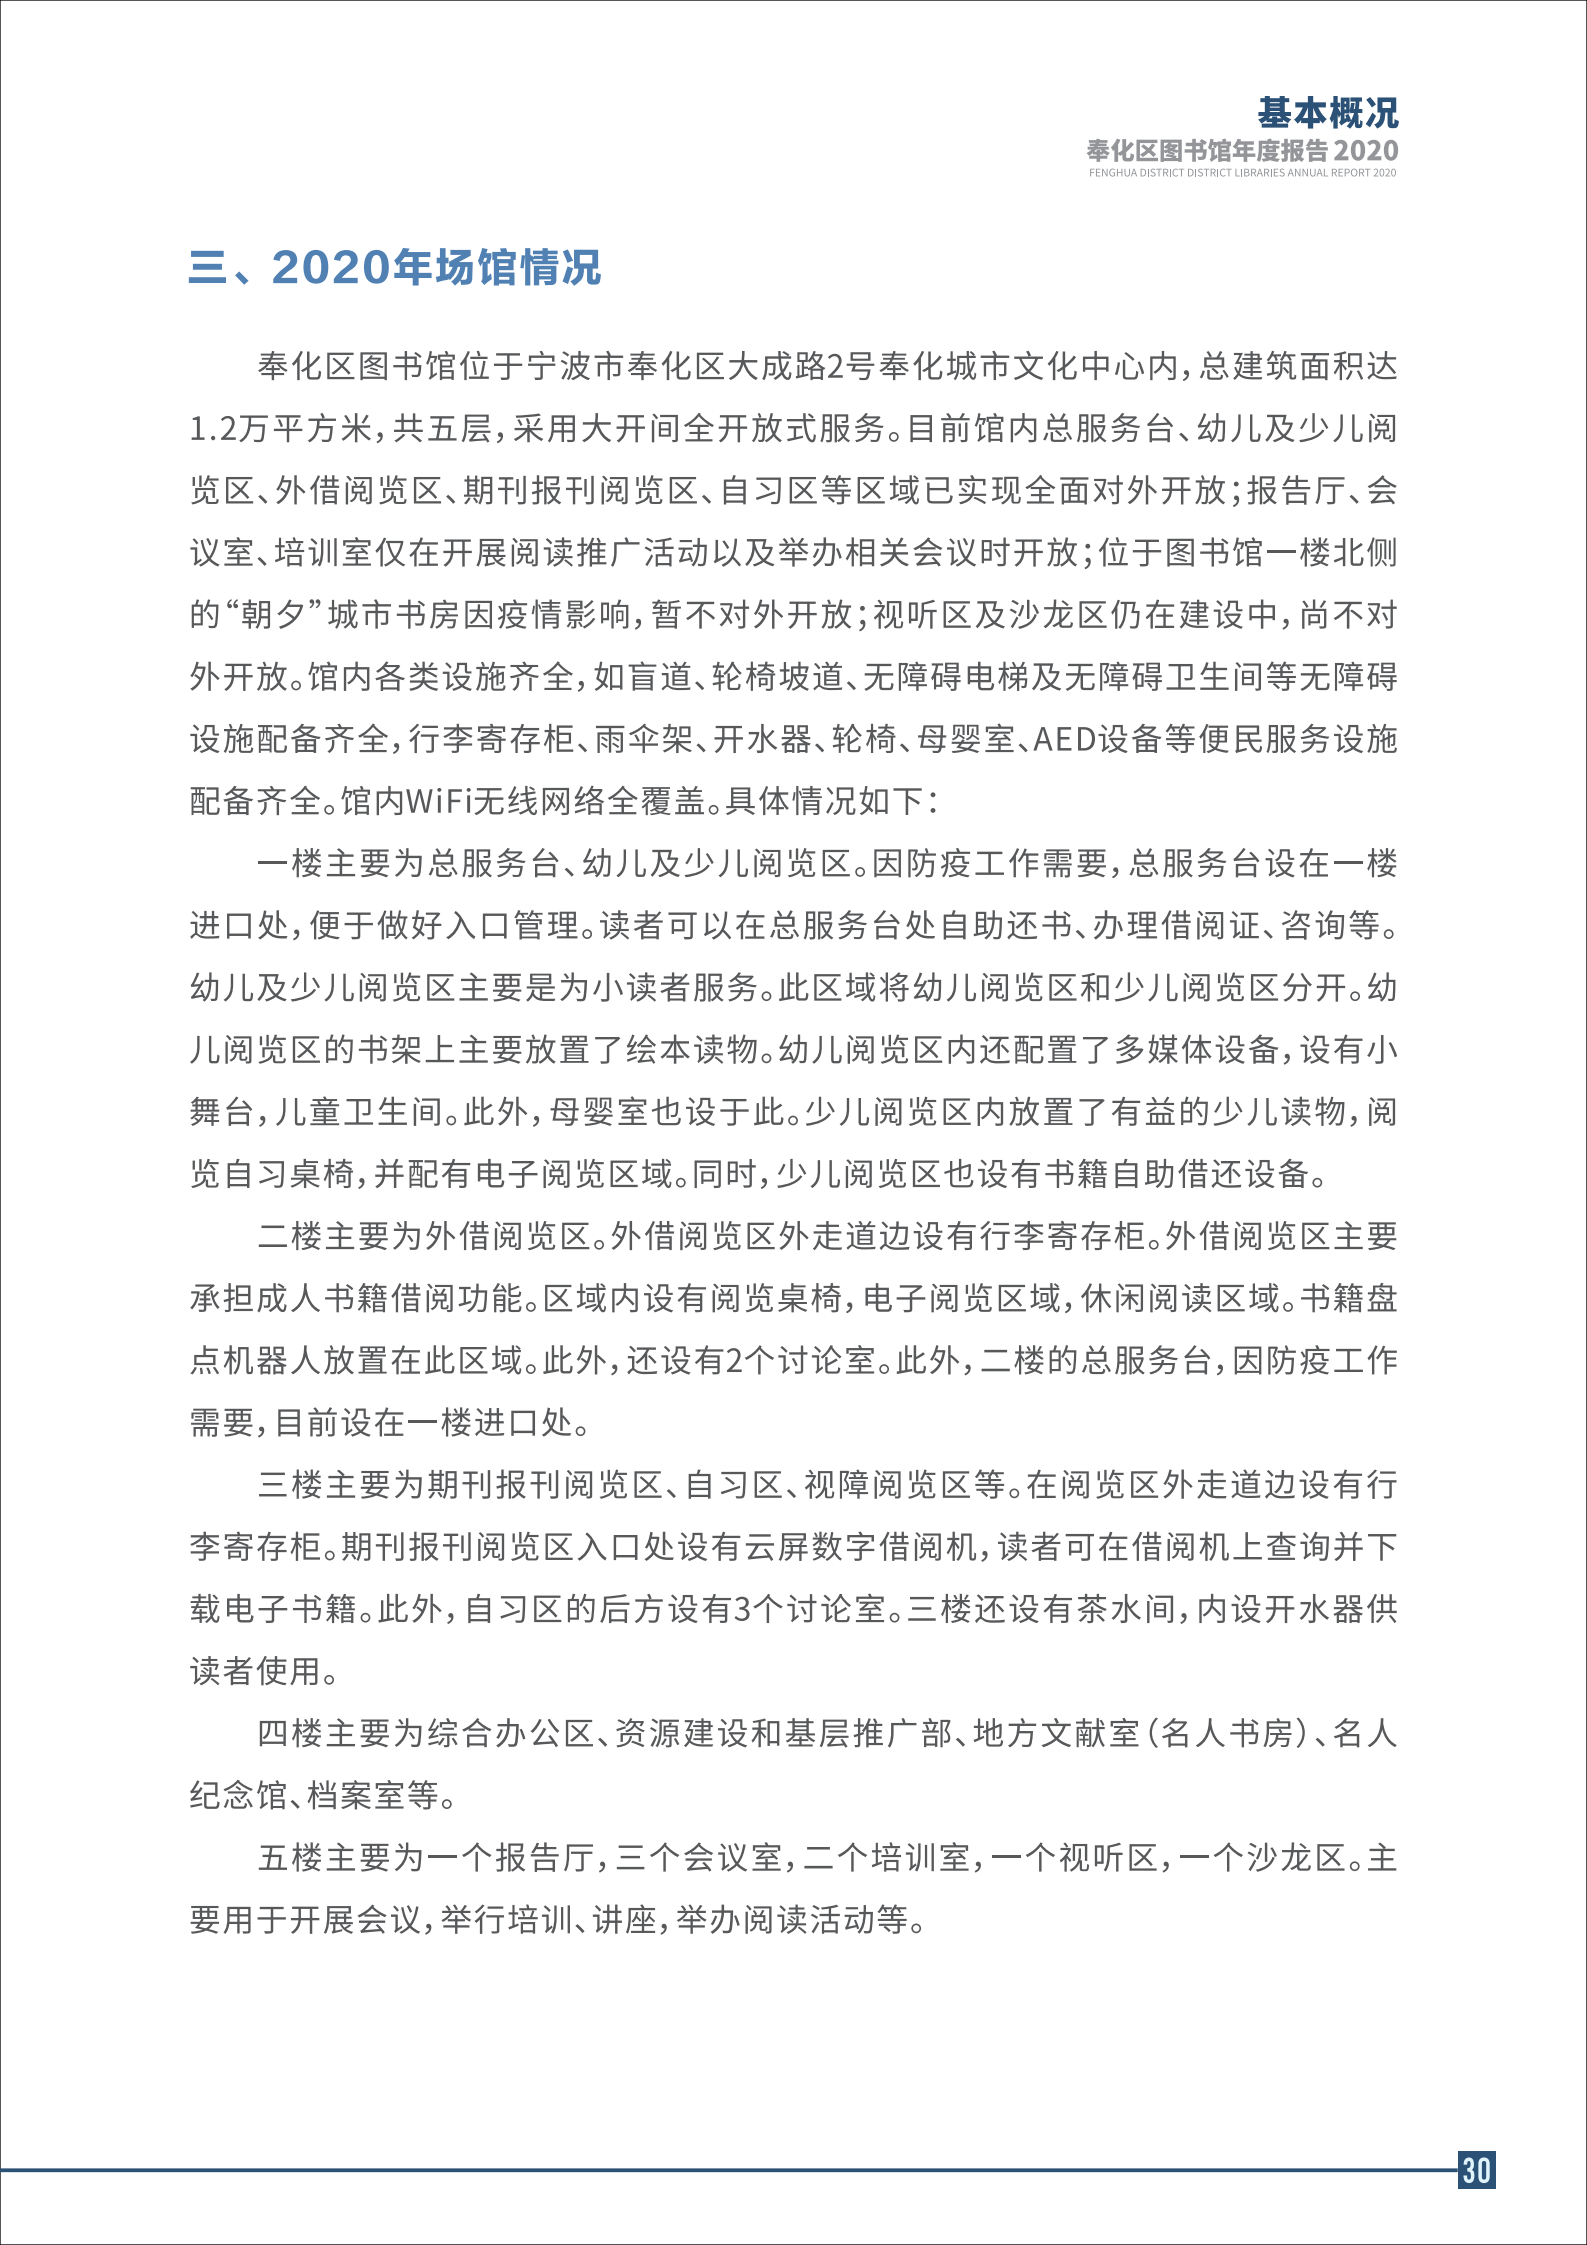 宁波市奉化区图书馆2020年年度报告 终稿_30.png